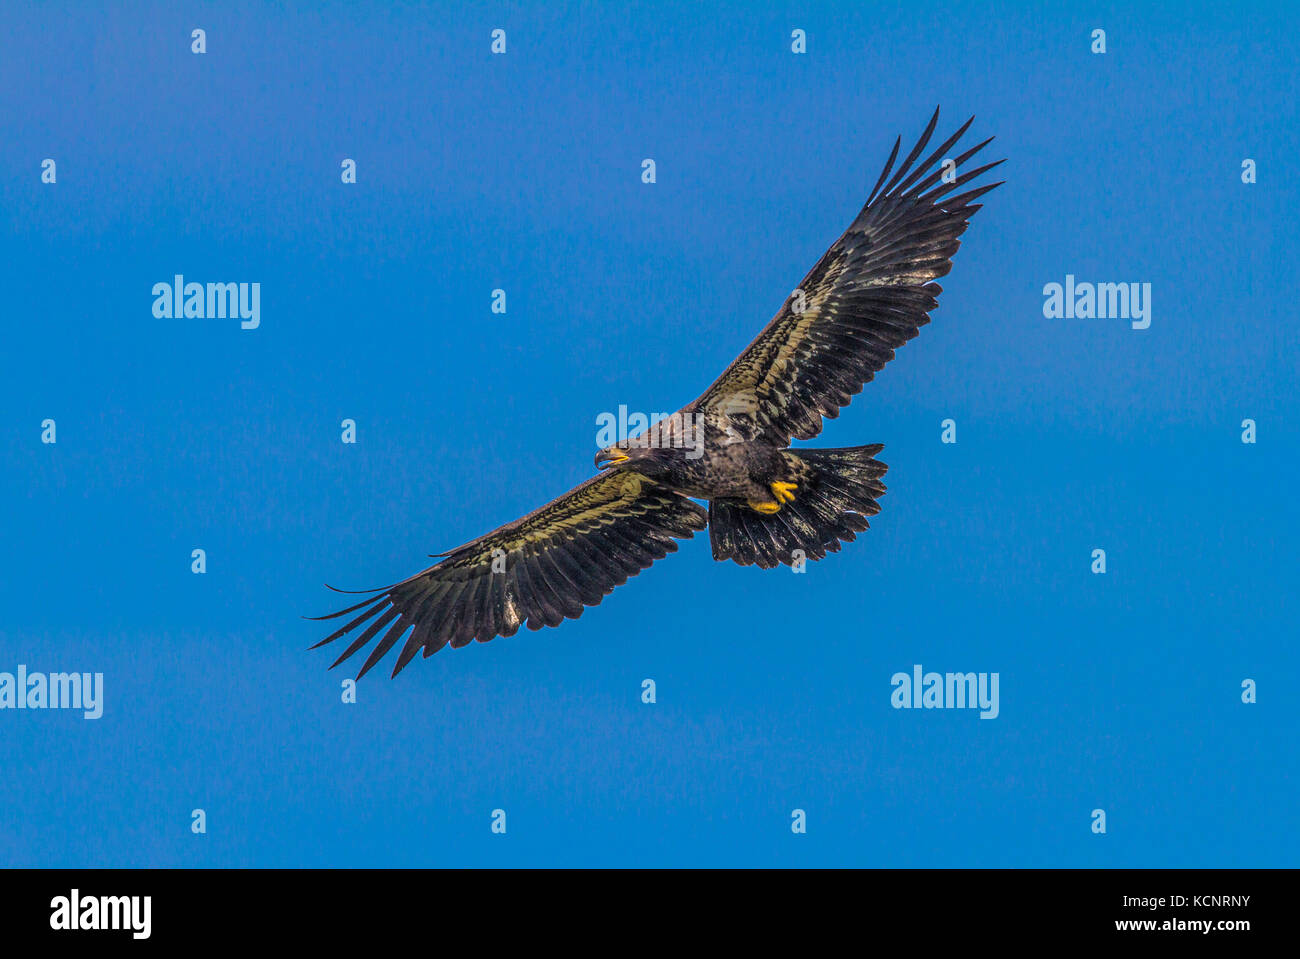 Aquila reale (Aquila chrysaetos) piena apertura alare, come aquila vola in cerca di cibo., Cranbrook, British Columbia, Canada Foto Stock